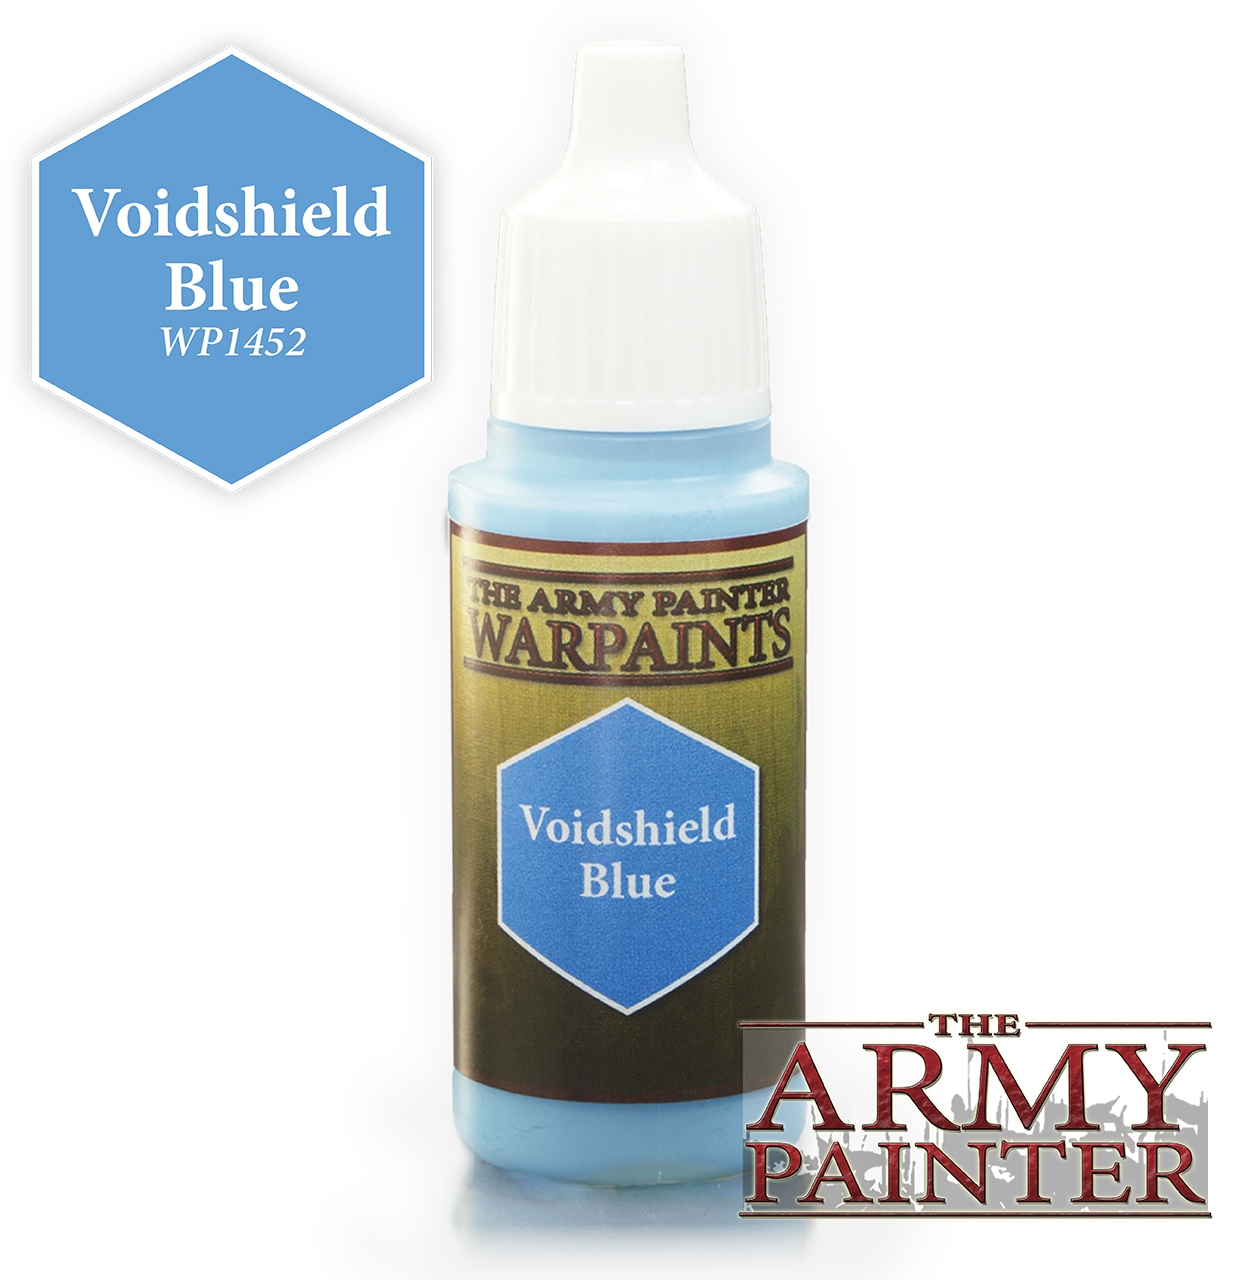 

Краска для моделизма Army Painter Voidshield Blue 18 мл, Голубой